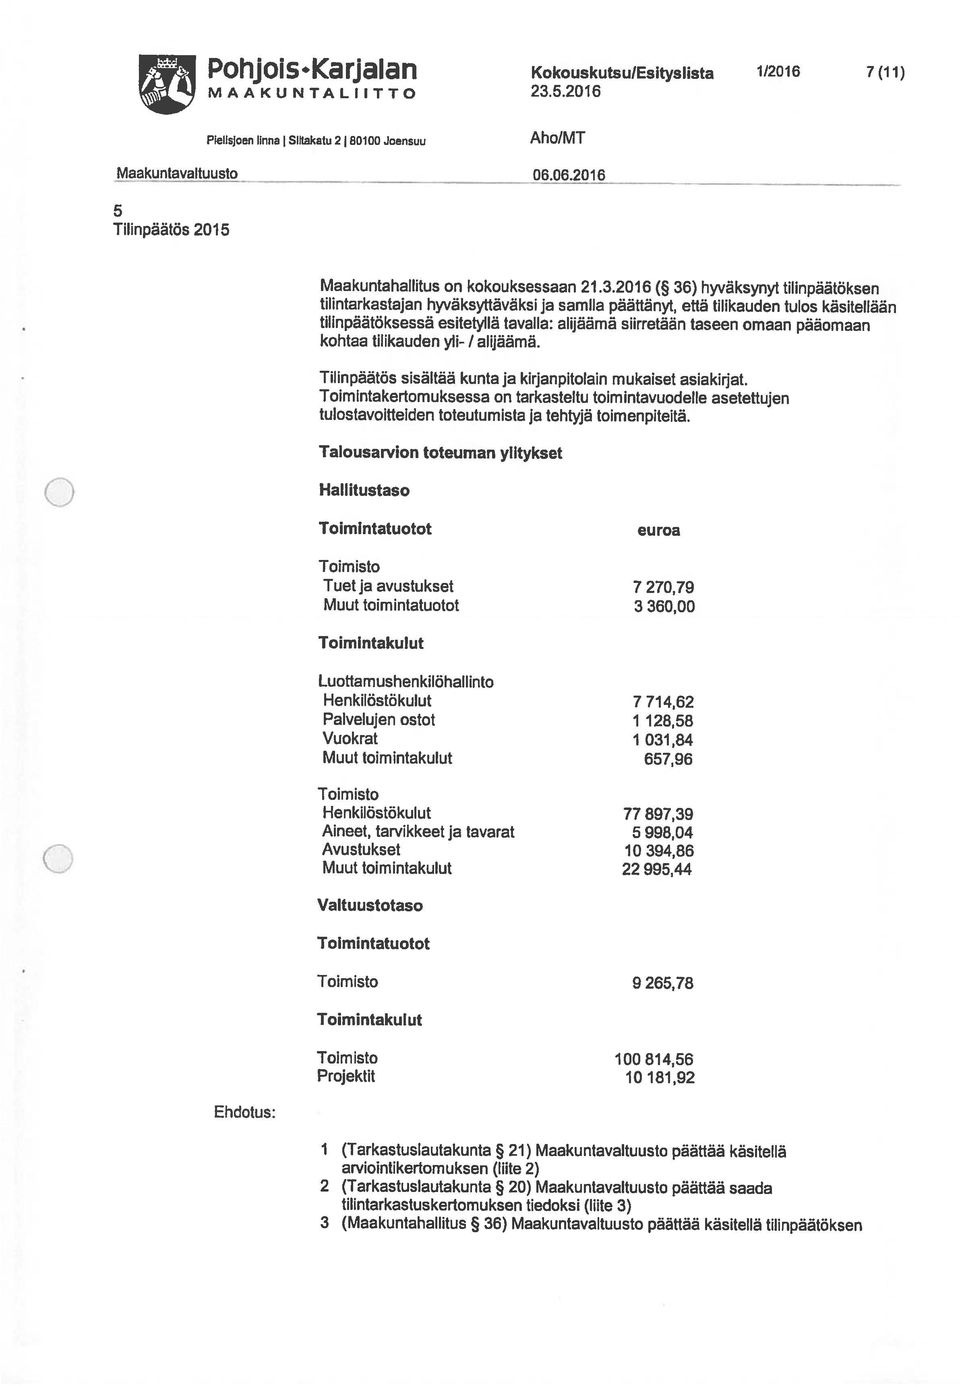 Karjalan KokouskutsulEsityslista 1/216 7(17) tilintarkastuskertomuksen tiedoksi (liite 3) 2 (Tarkastuslautakunta 2) Maakuntavaltuusto päättää saada arviointikertomuksen (liite 2) Projektit 1 181,92